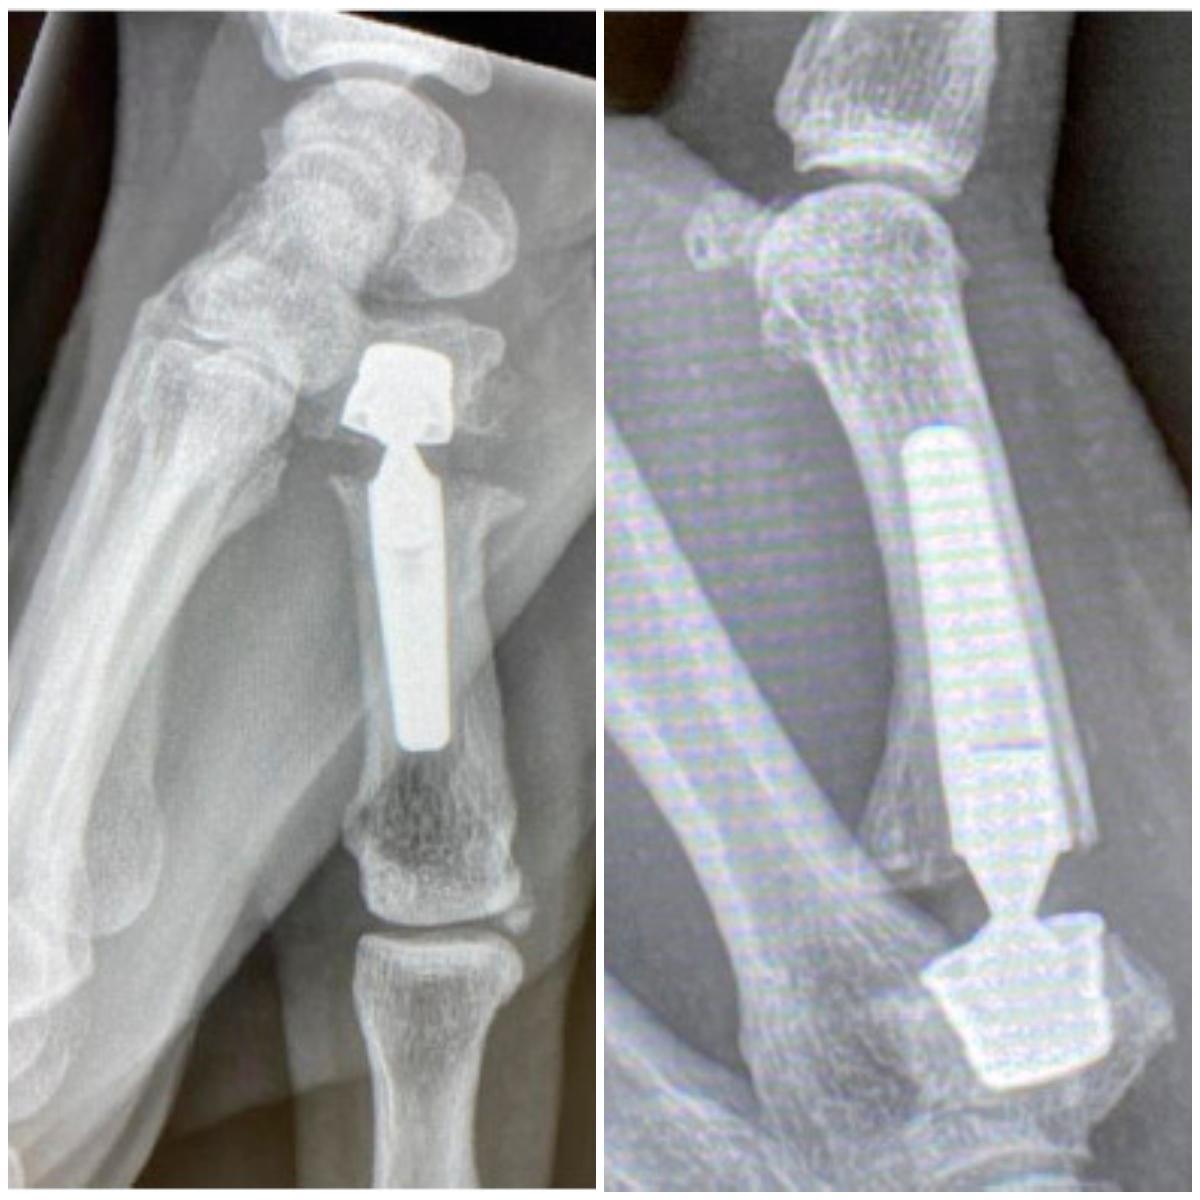 Radiografías de una artroplastia de pulgar como la que se expondrá en las sesiones clínicas de la FHGST.